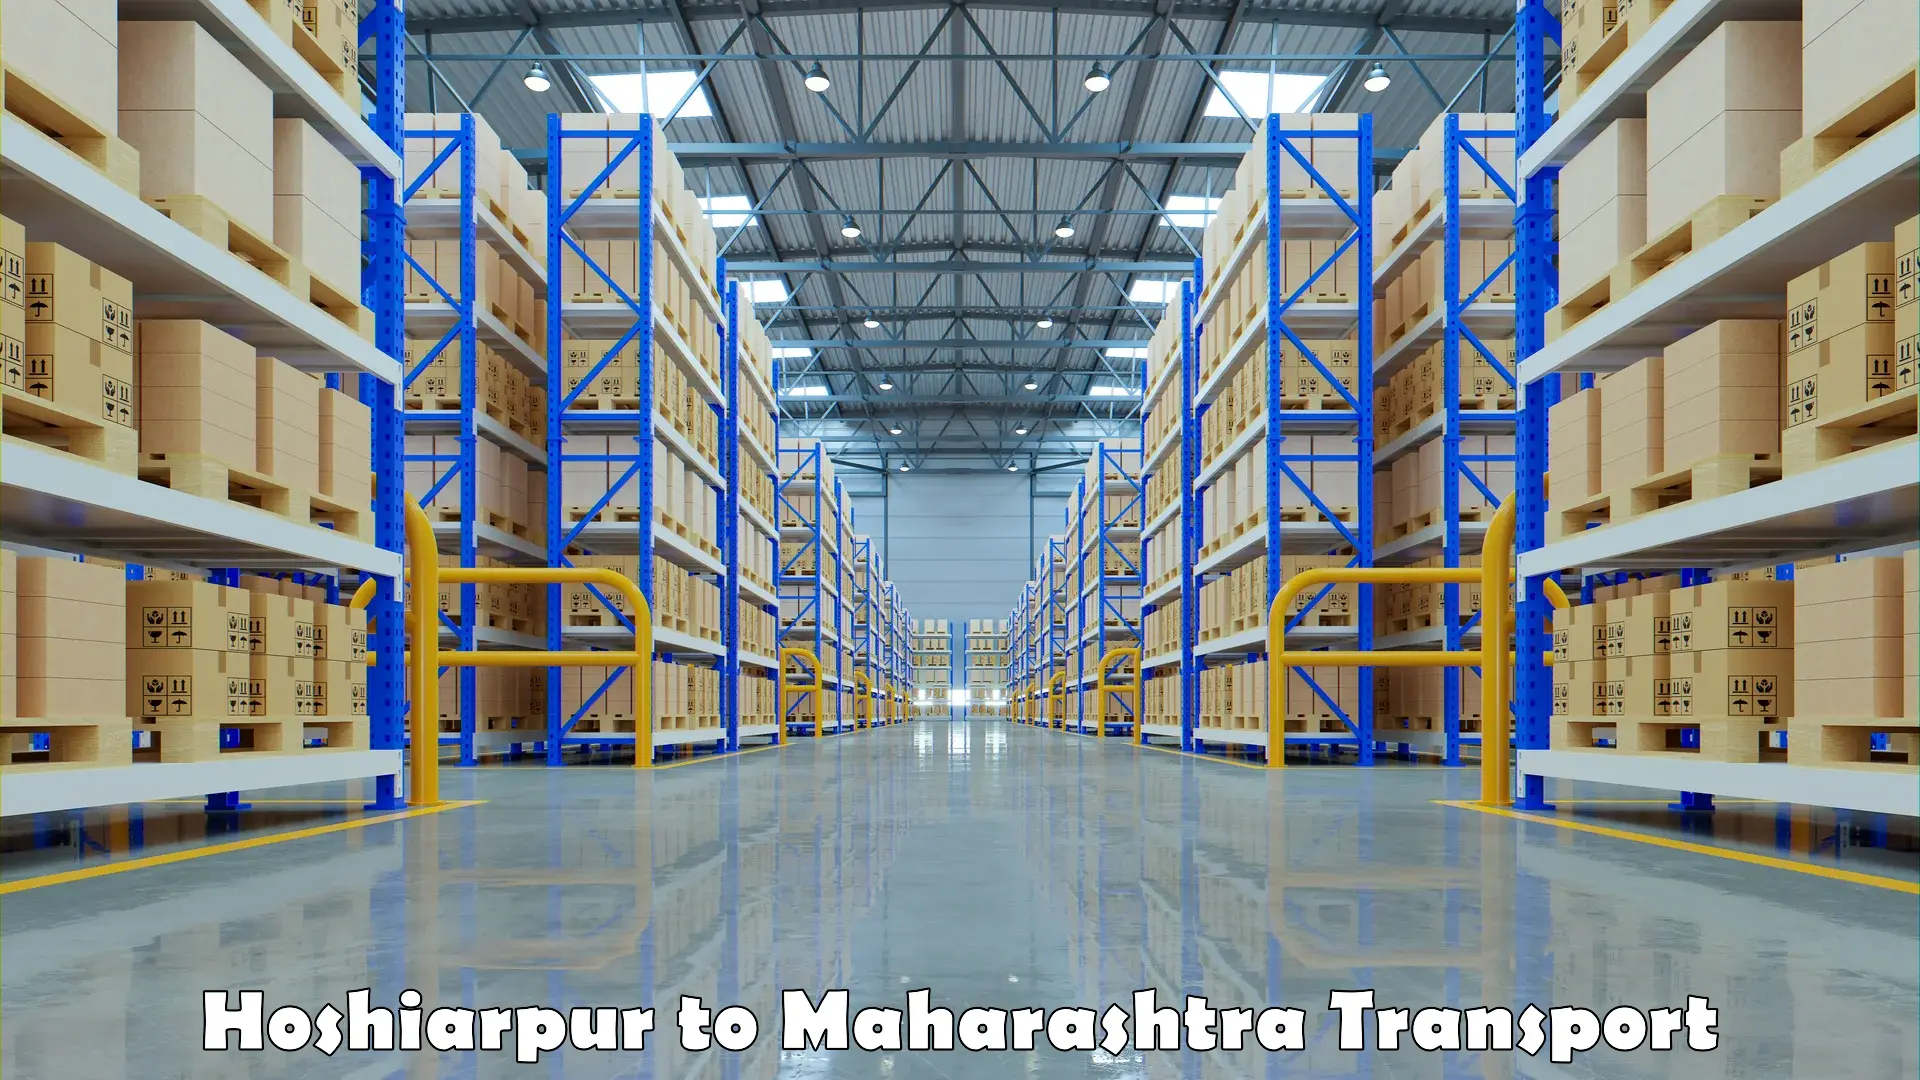 Express transport services Hoshiarpur to Maharashtra